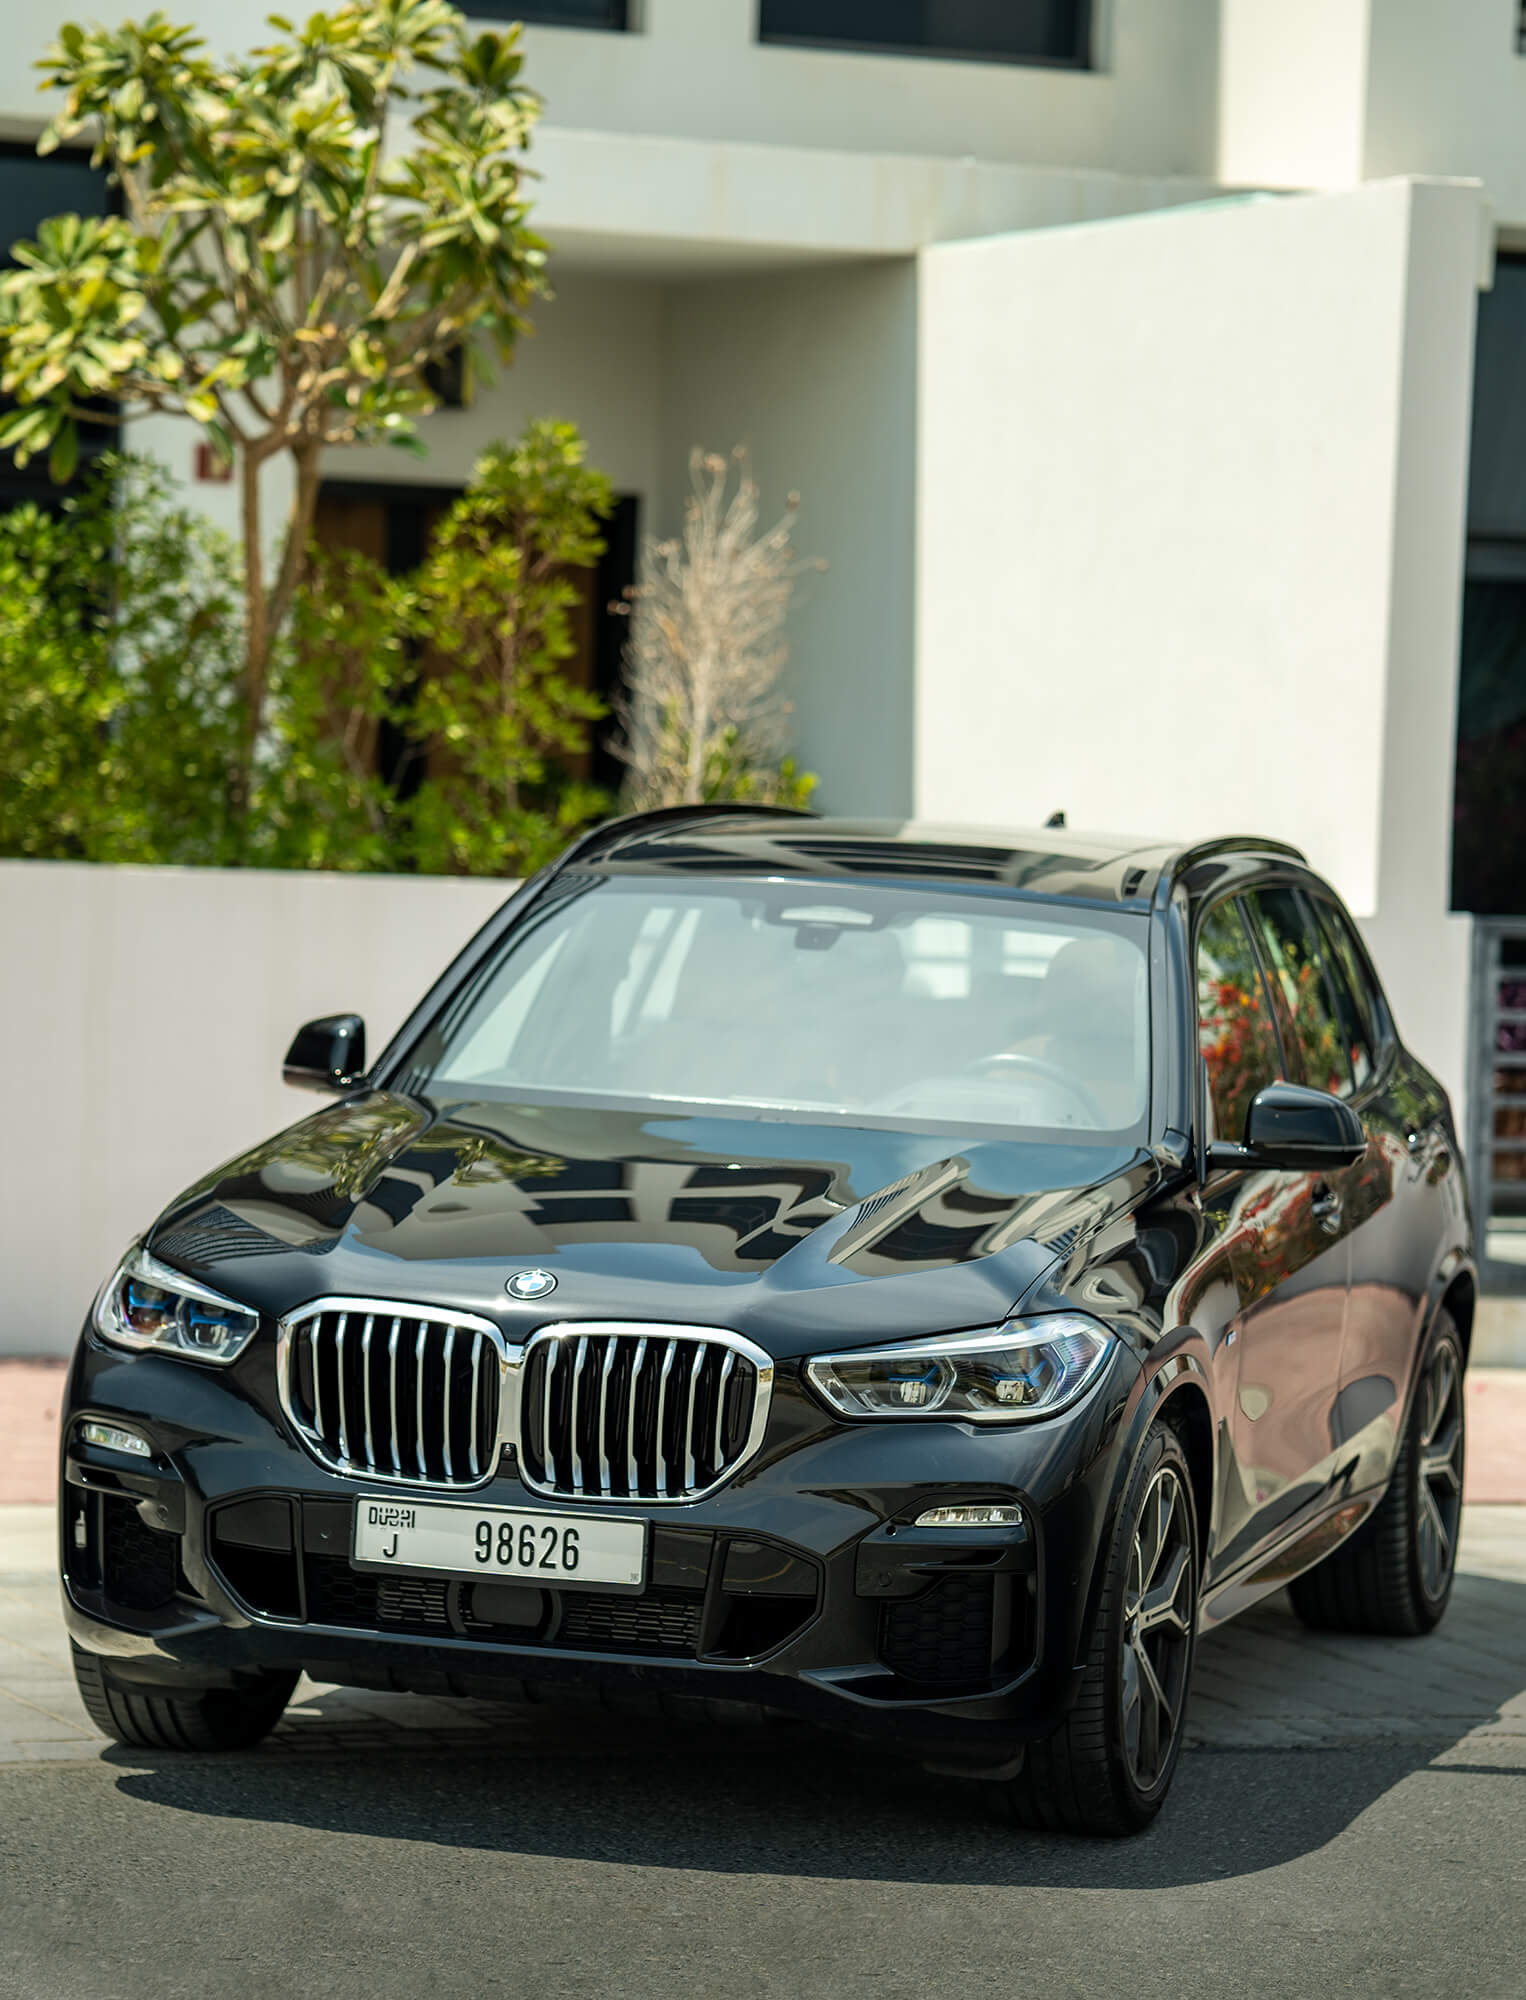 Louez une BMW X5 à Dubaï